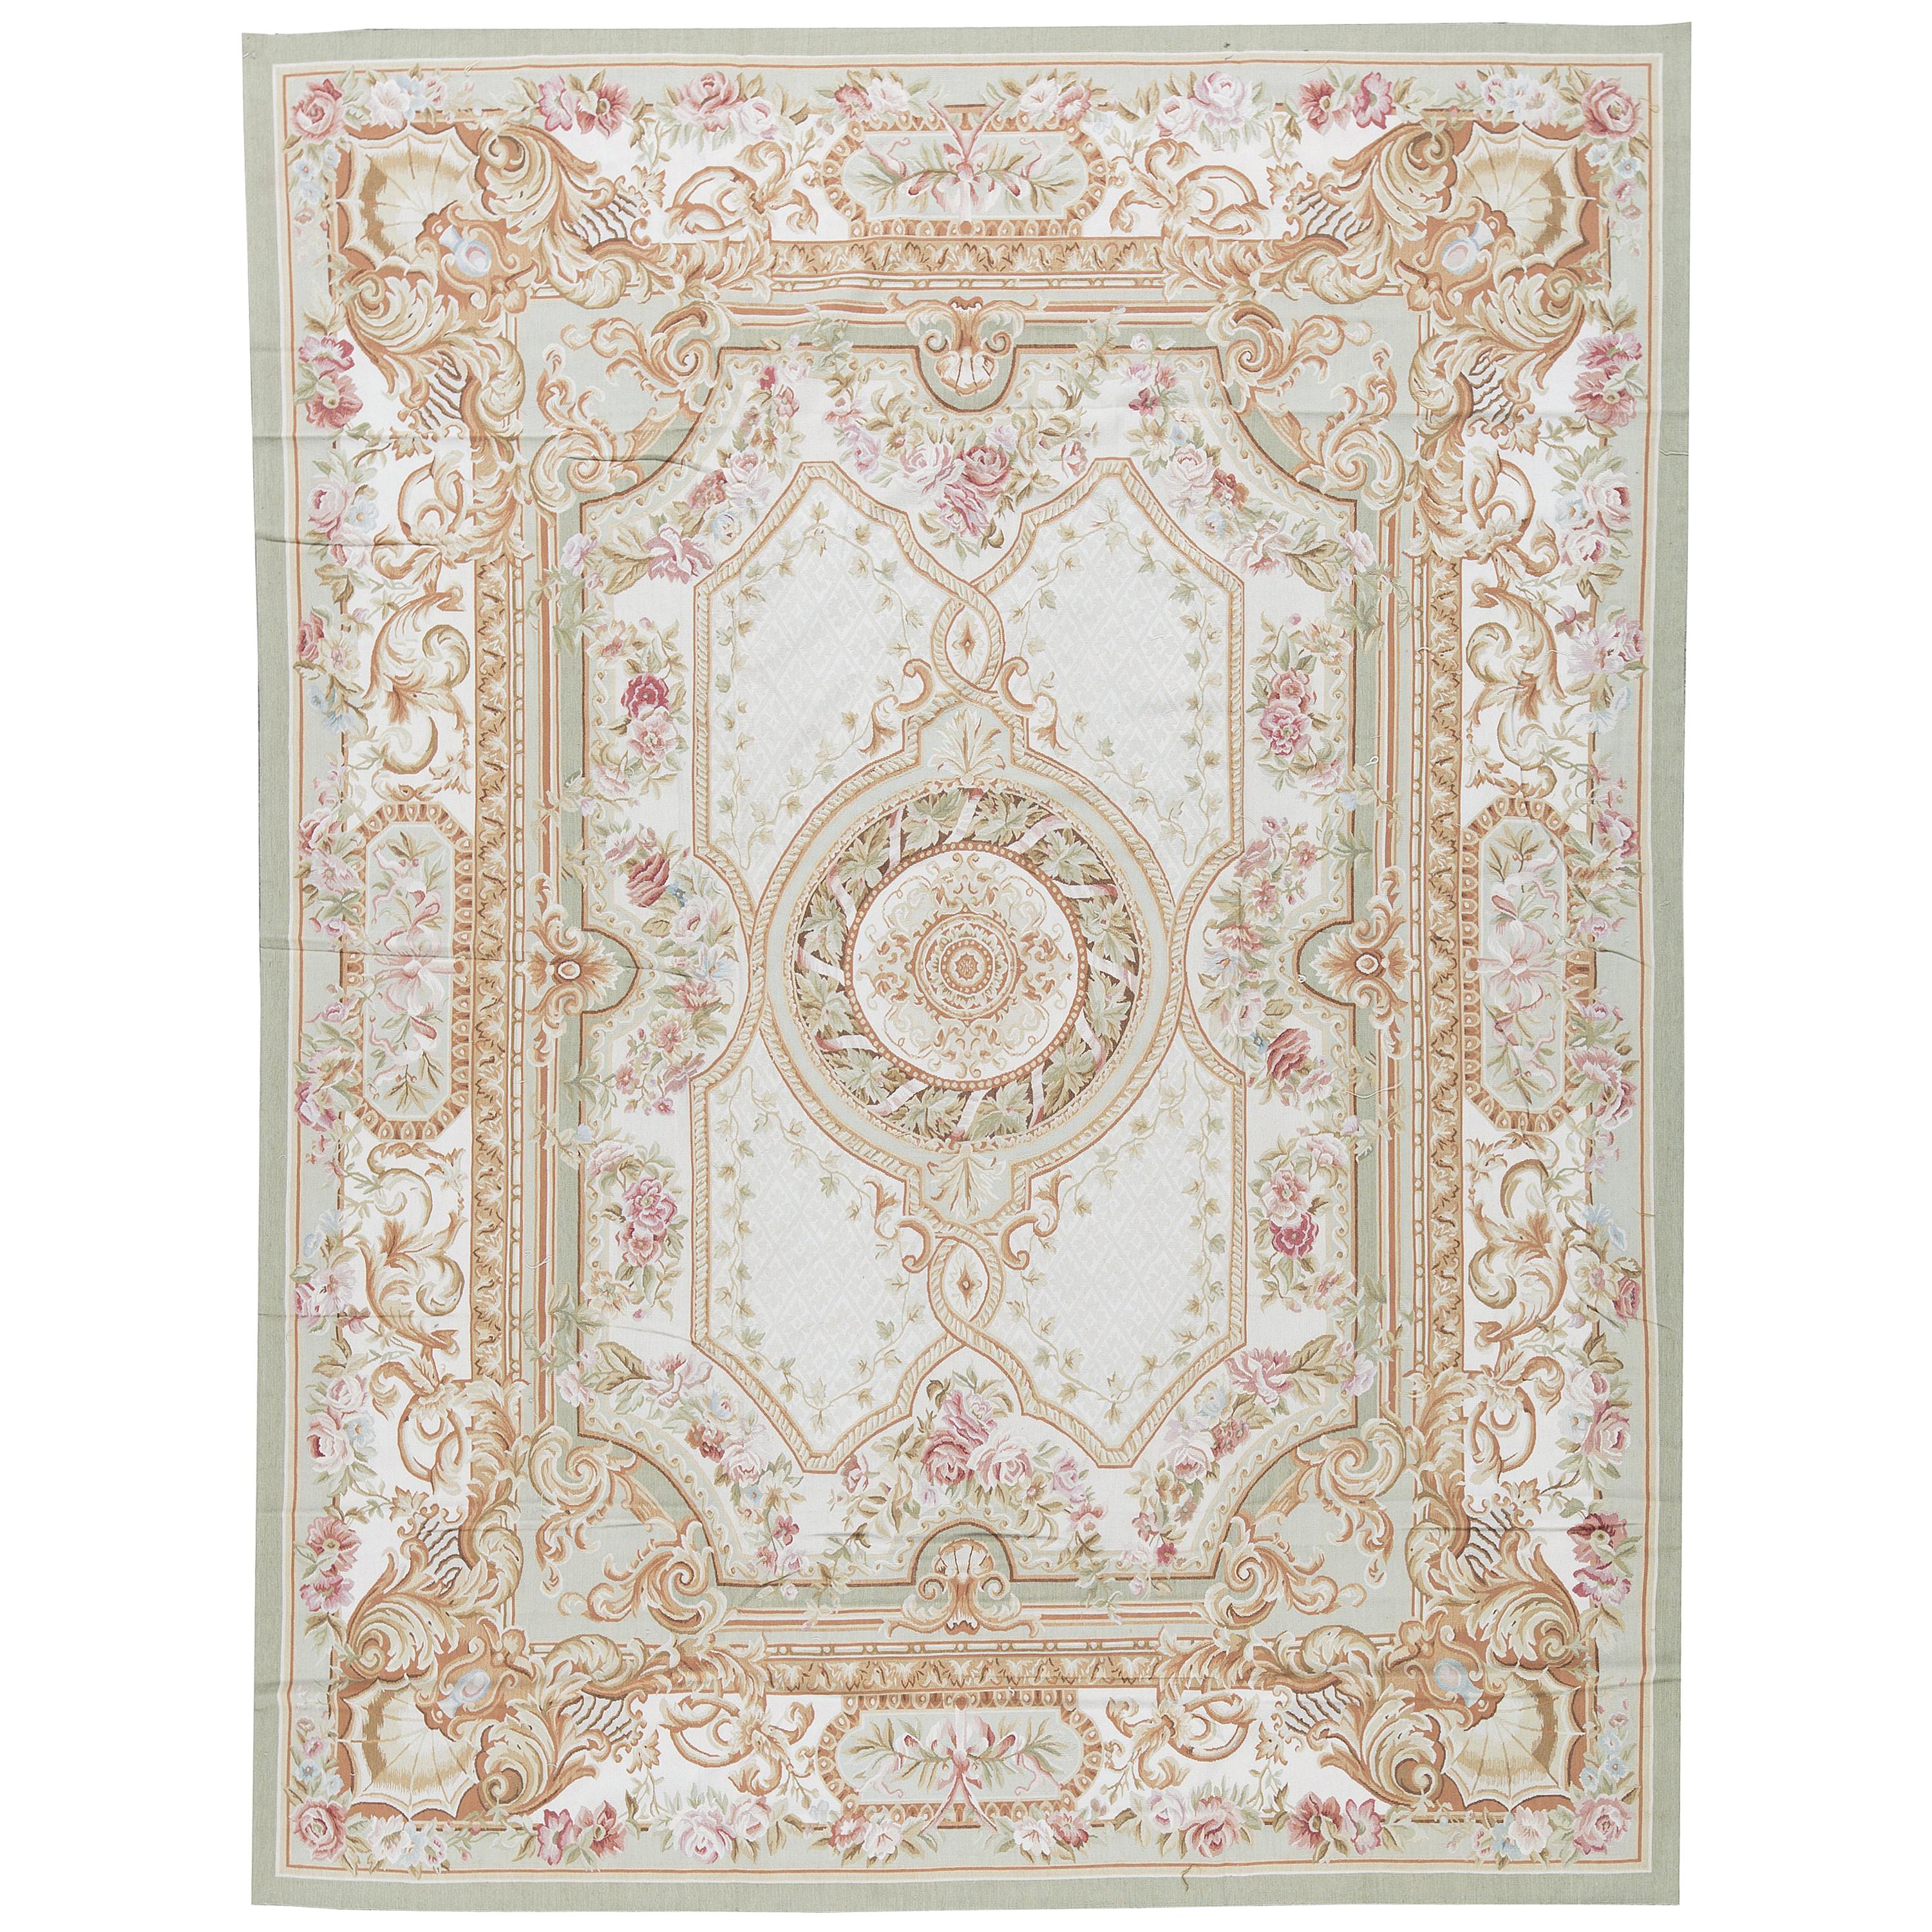 Traditioneller französischer Flachgewebe-Teppich im Aubusson-Stil aus dem 17. Jahrhundert